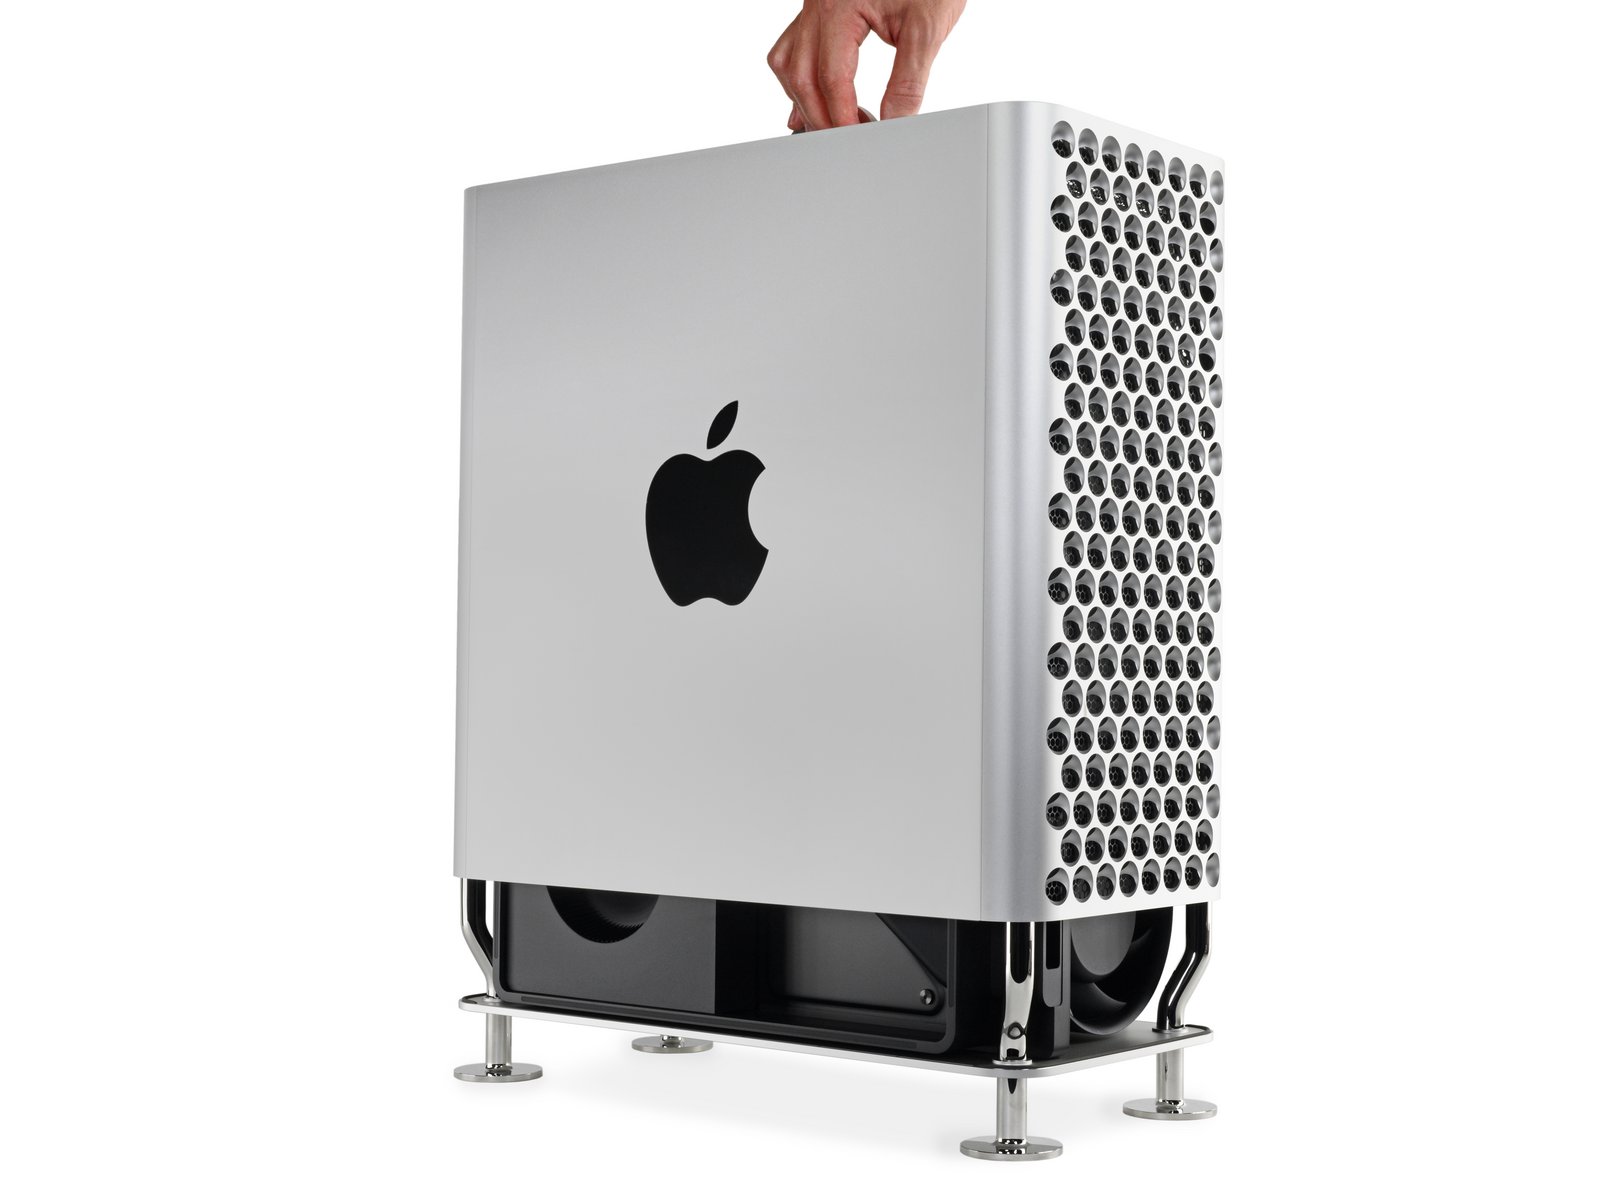 2019 Mac Pro 是最好拆解和維修的蘋果產品 | Apple News, iFixit, Mac Pro, Pro Display XDR | iPhone News 愛瘋了